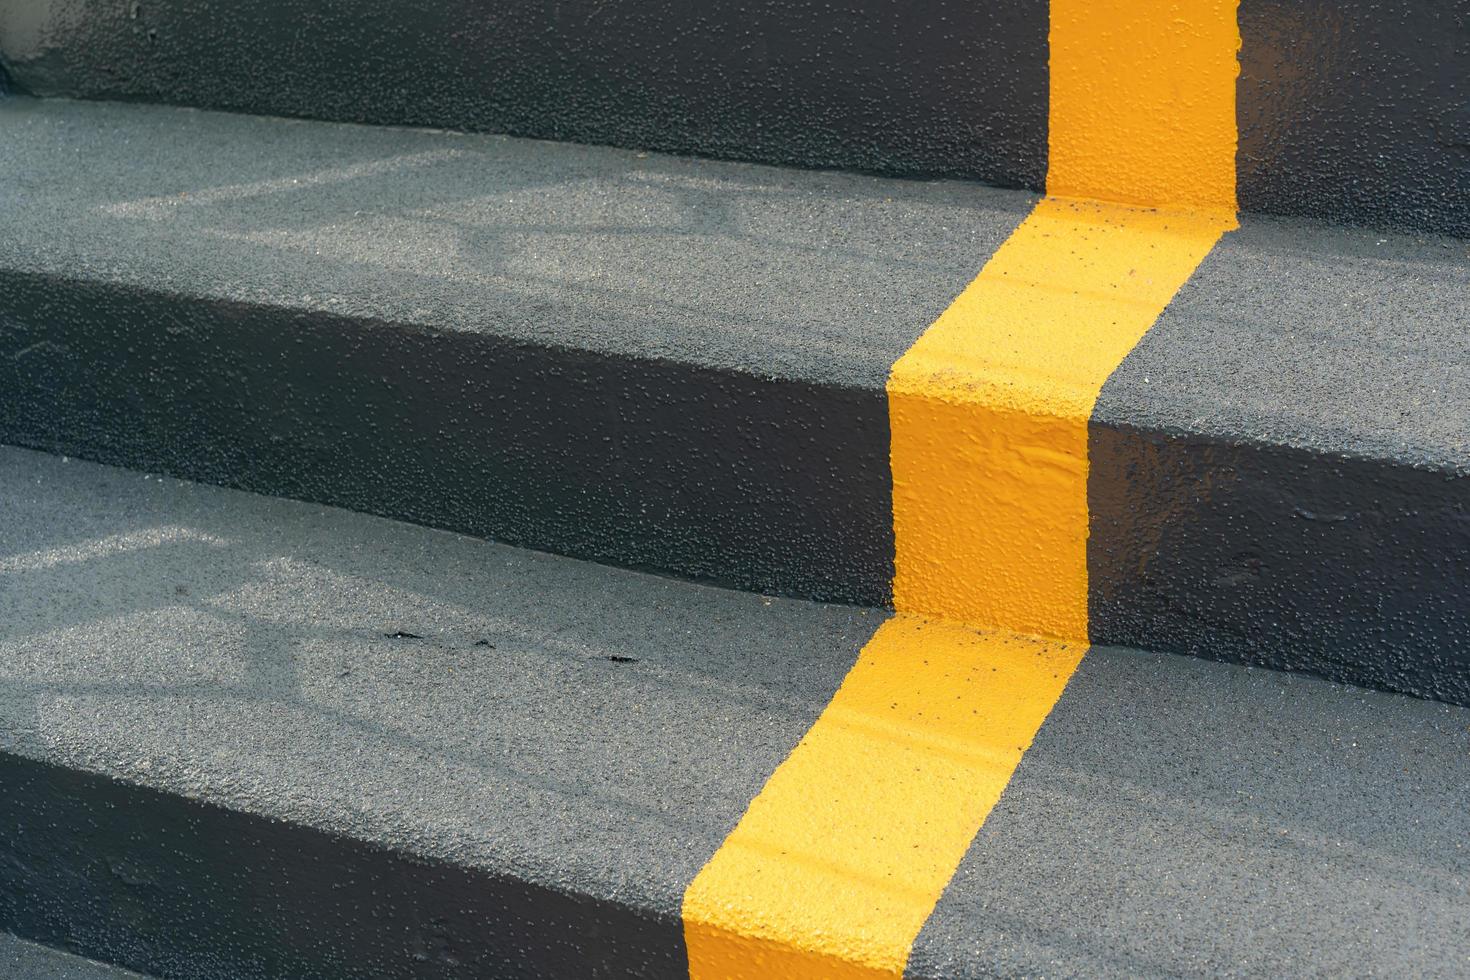 överfartens trappa med gul körfältslinje och räcke för vägkorsningssäkerhet. gå tecken på stege. gult kors på trappan. foto